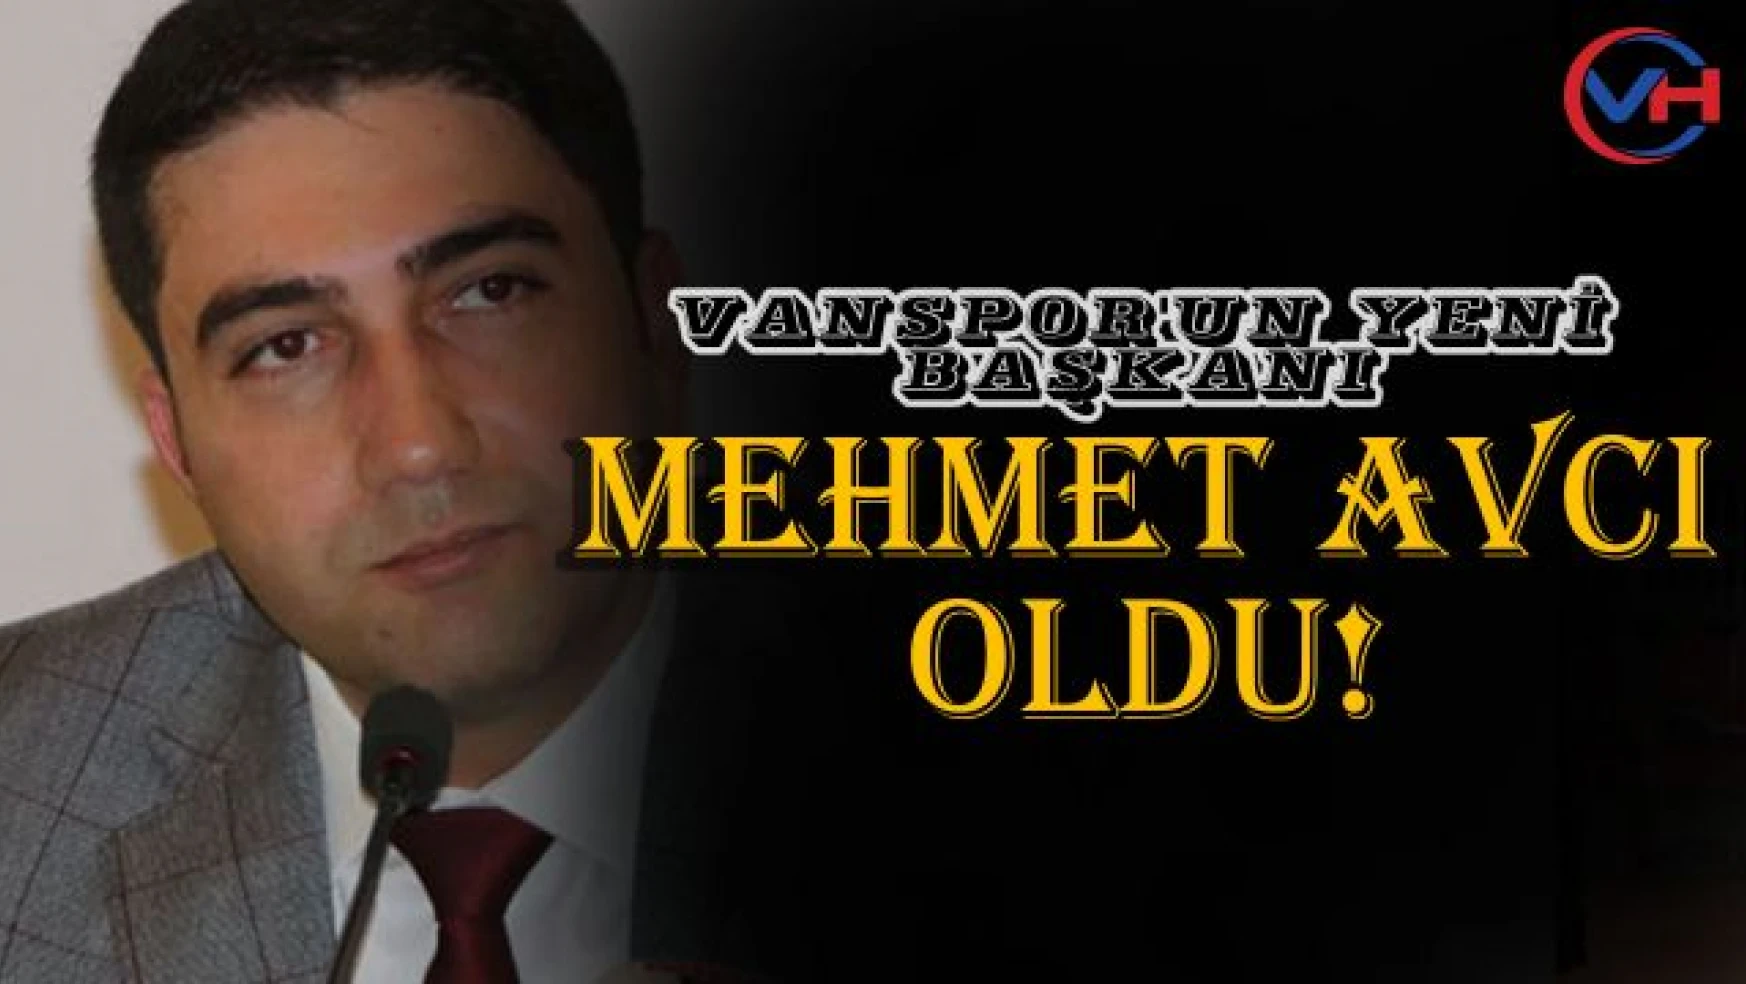 Vanspor'un yeni başkanı Mehmet Avcı oldu!